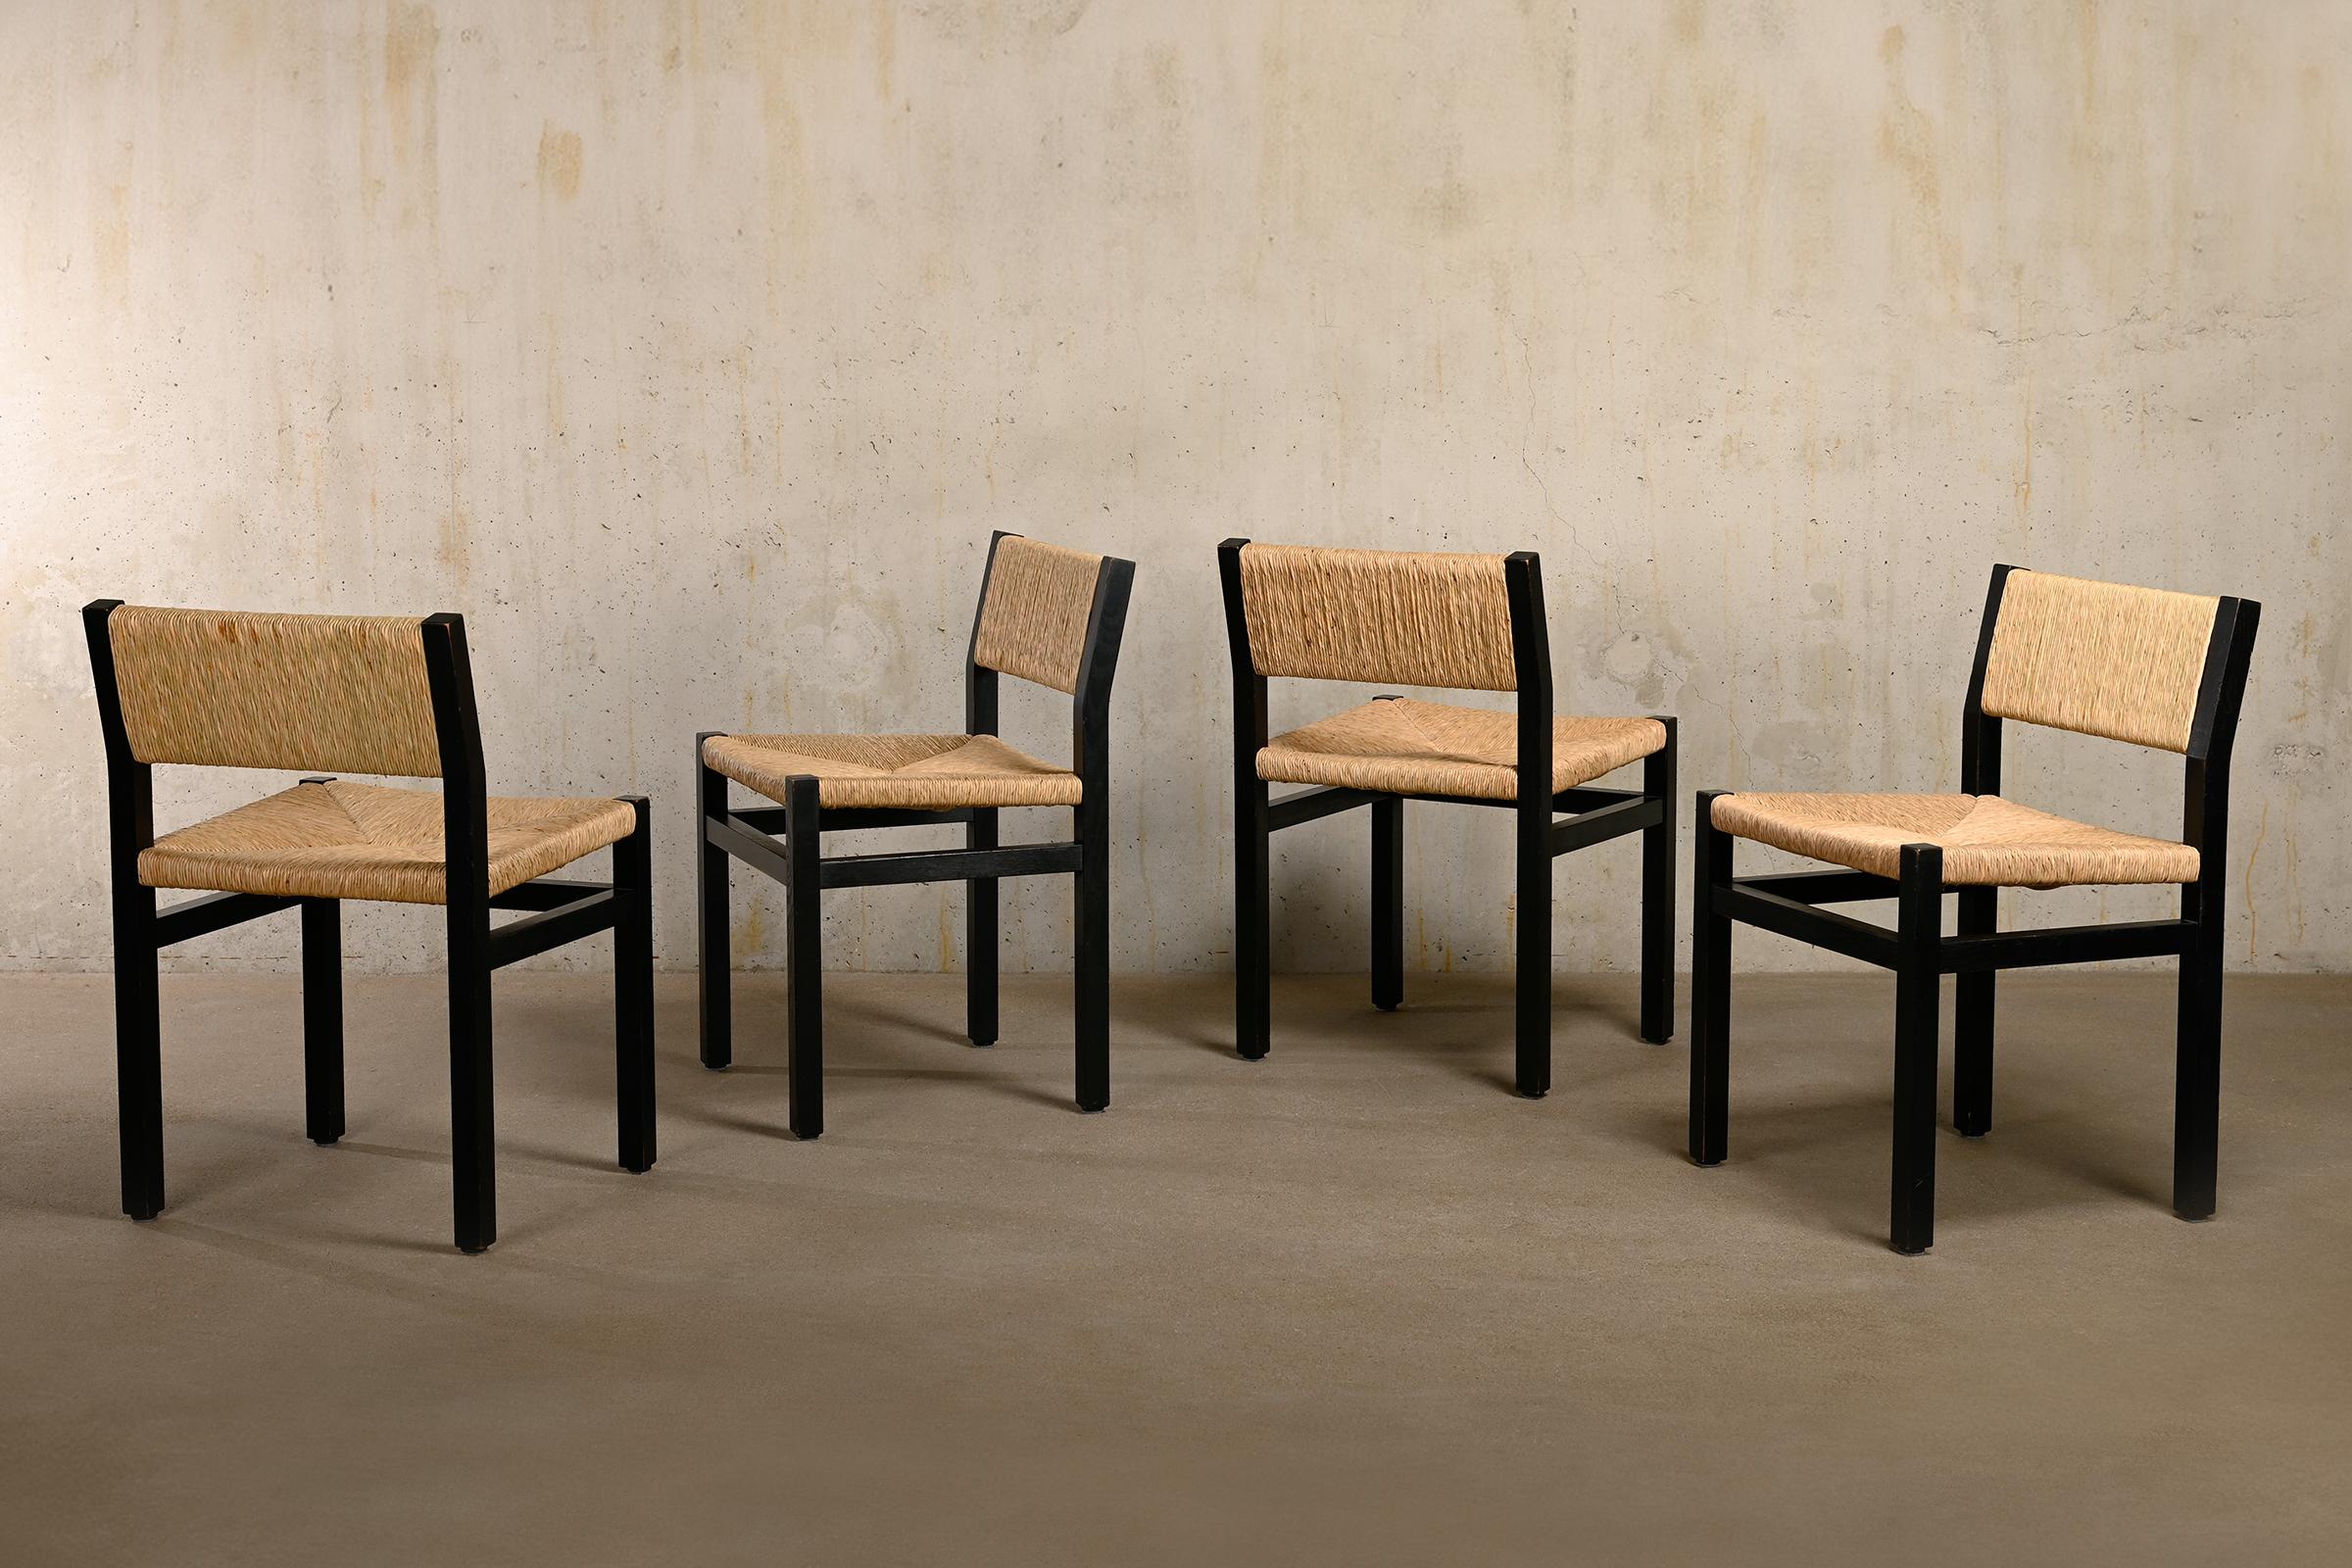 Magnifique ensemble de 4 chaises de salle à manger (modèle SE82) conçu par Martin Visser pour 't Spectrum, Pays-Bas, années 1970. Cadre en bois de frêne peint en noir, assise et dossier en jonc tressé à la main. Le design se caractérise par des